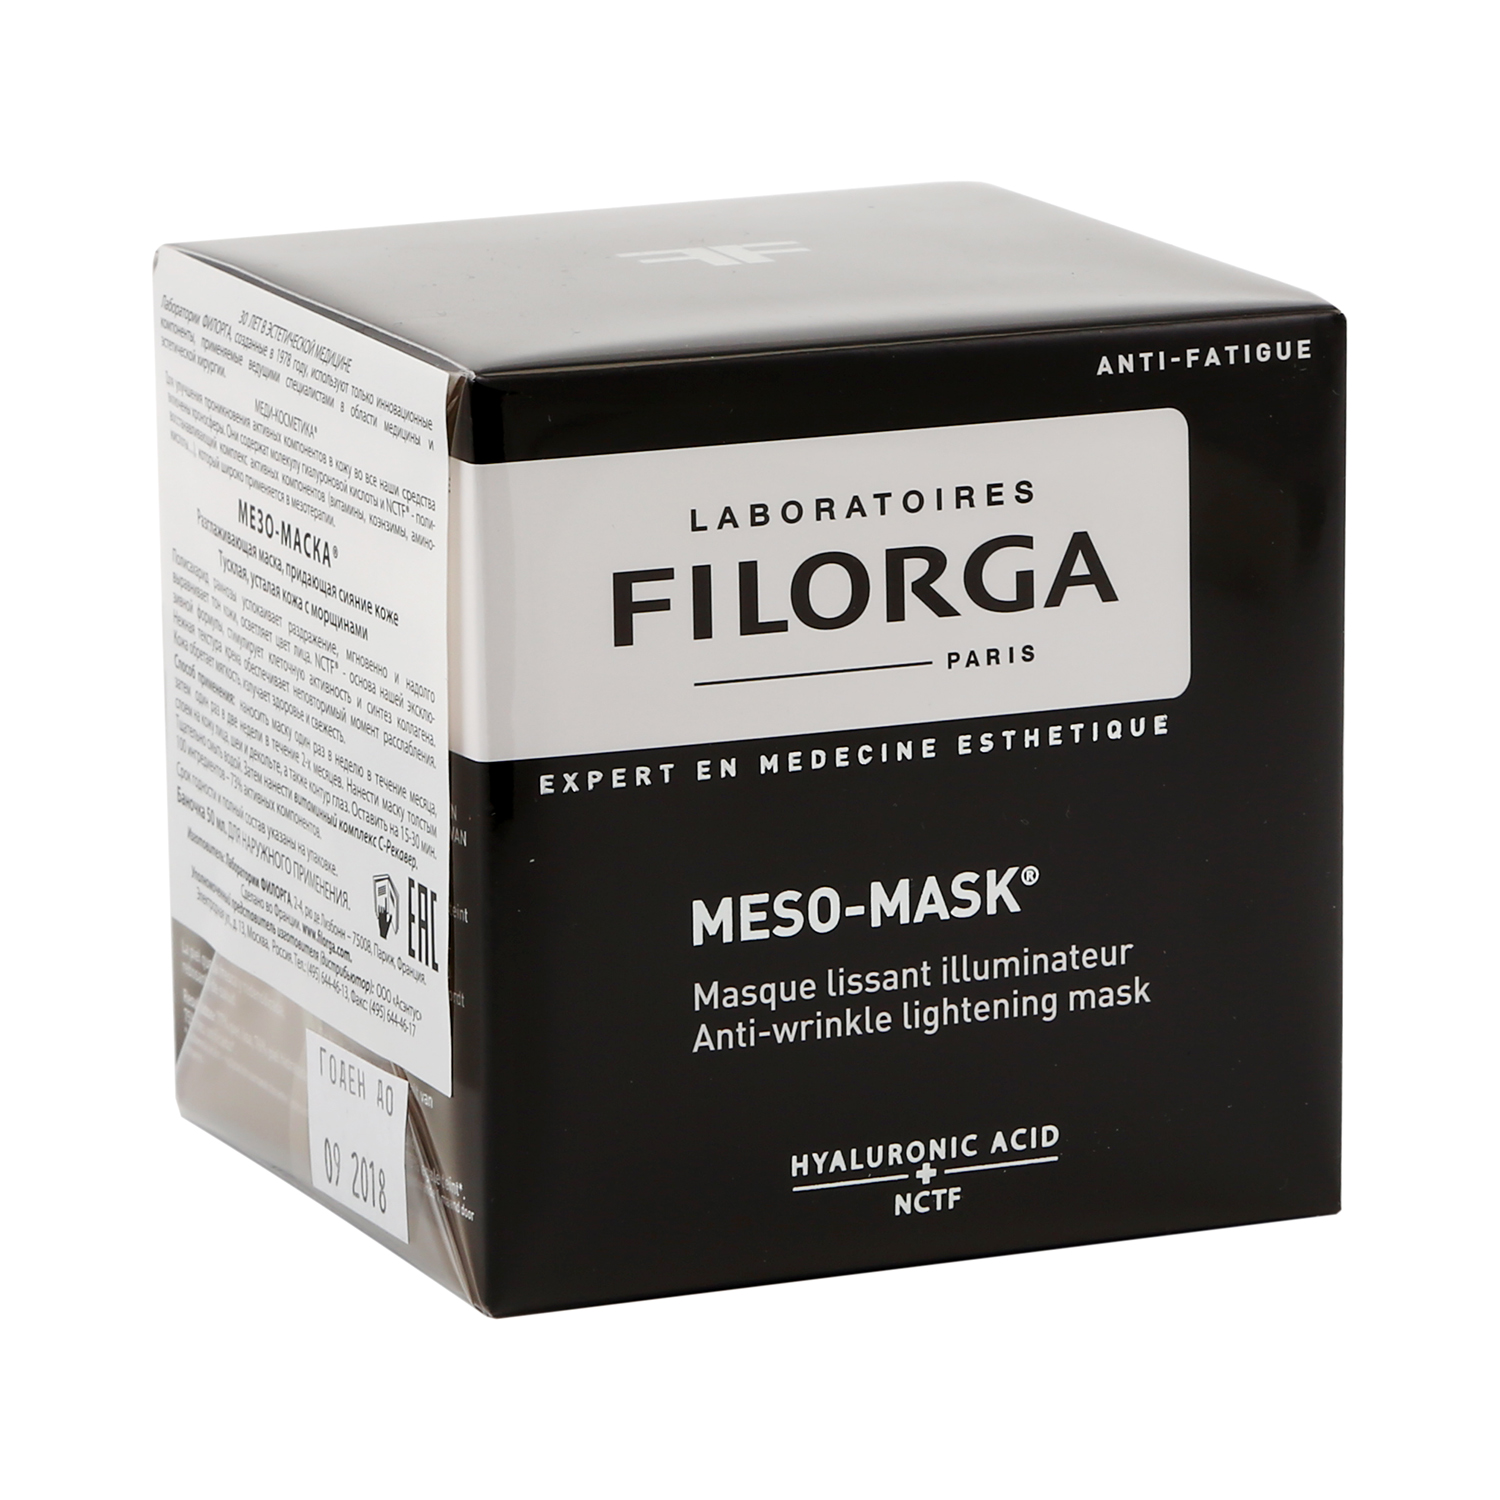 Филорга Мезо-Маска маска для лица разглаживающая придающая сияние 50мл от РИГЛА